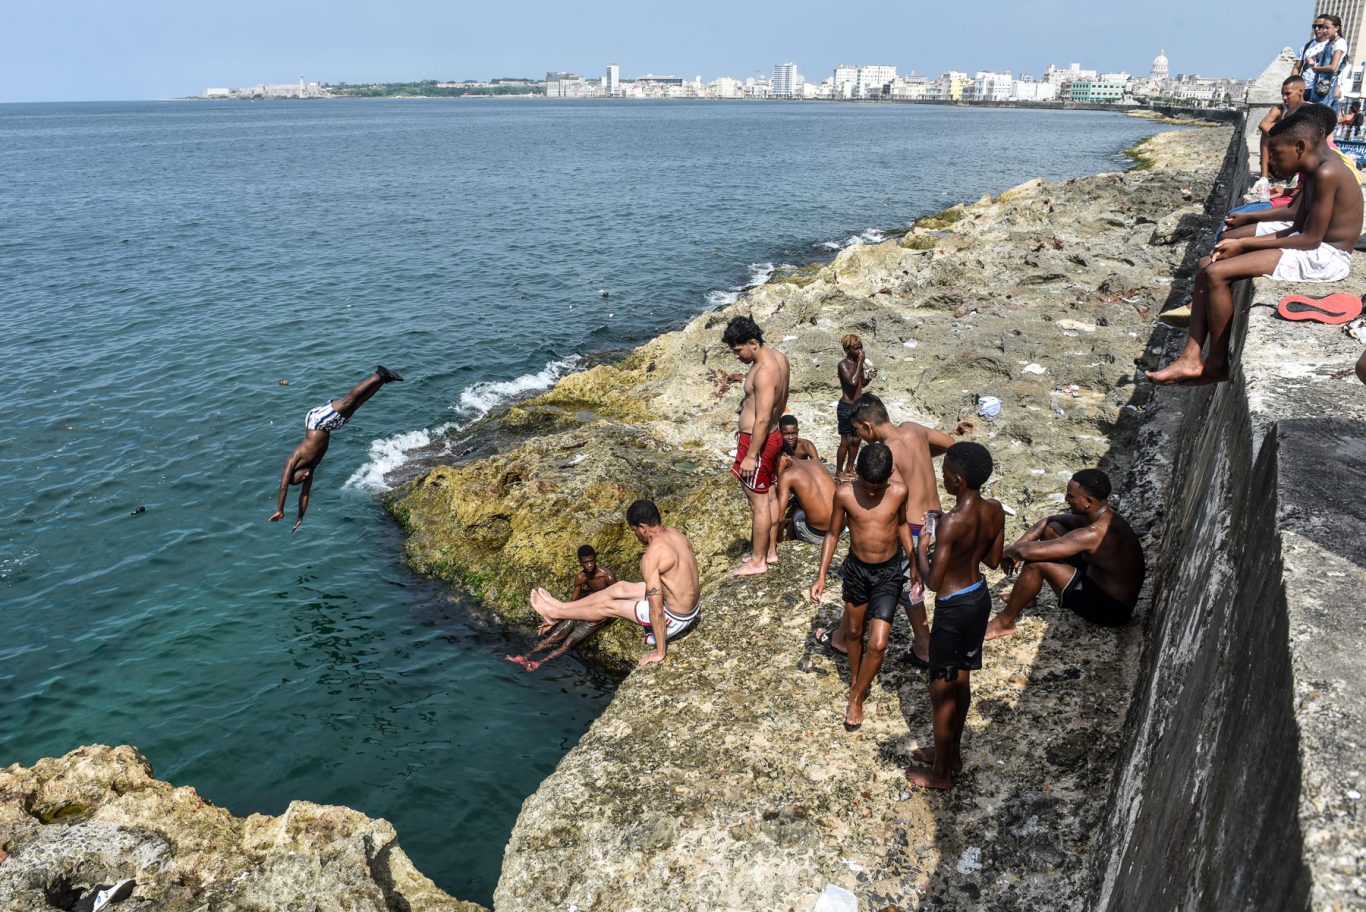 Los bañistas del malecón de La Habana forman parte de la icónica imagen del lugar. Foto: Kaloian.